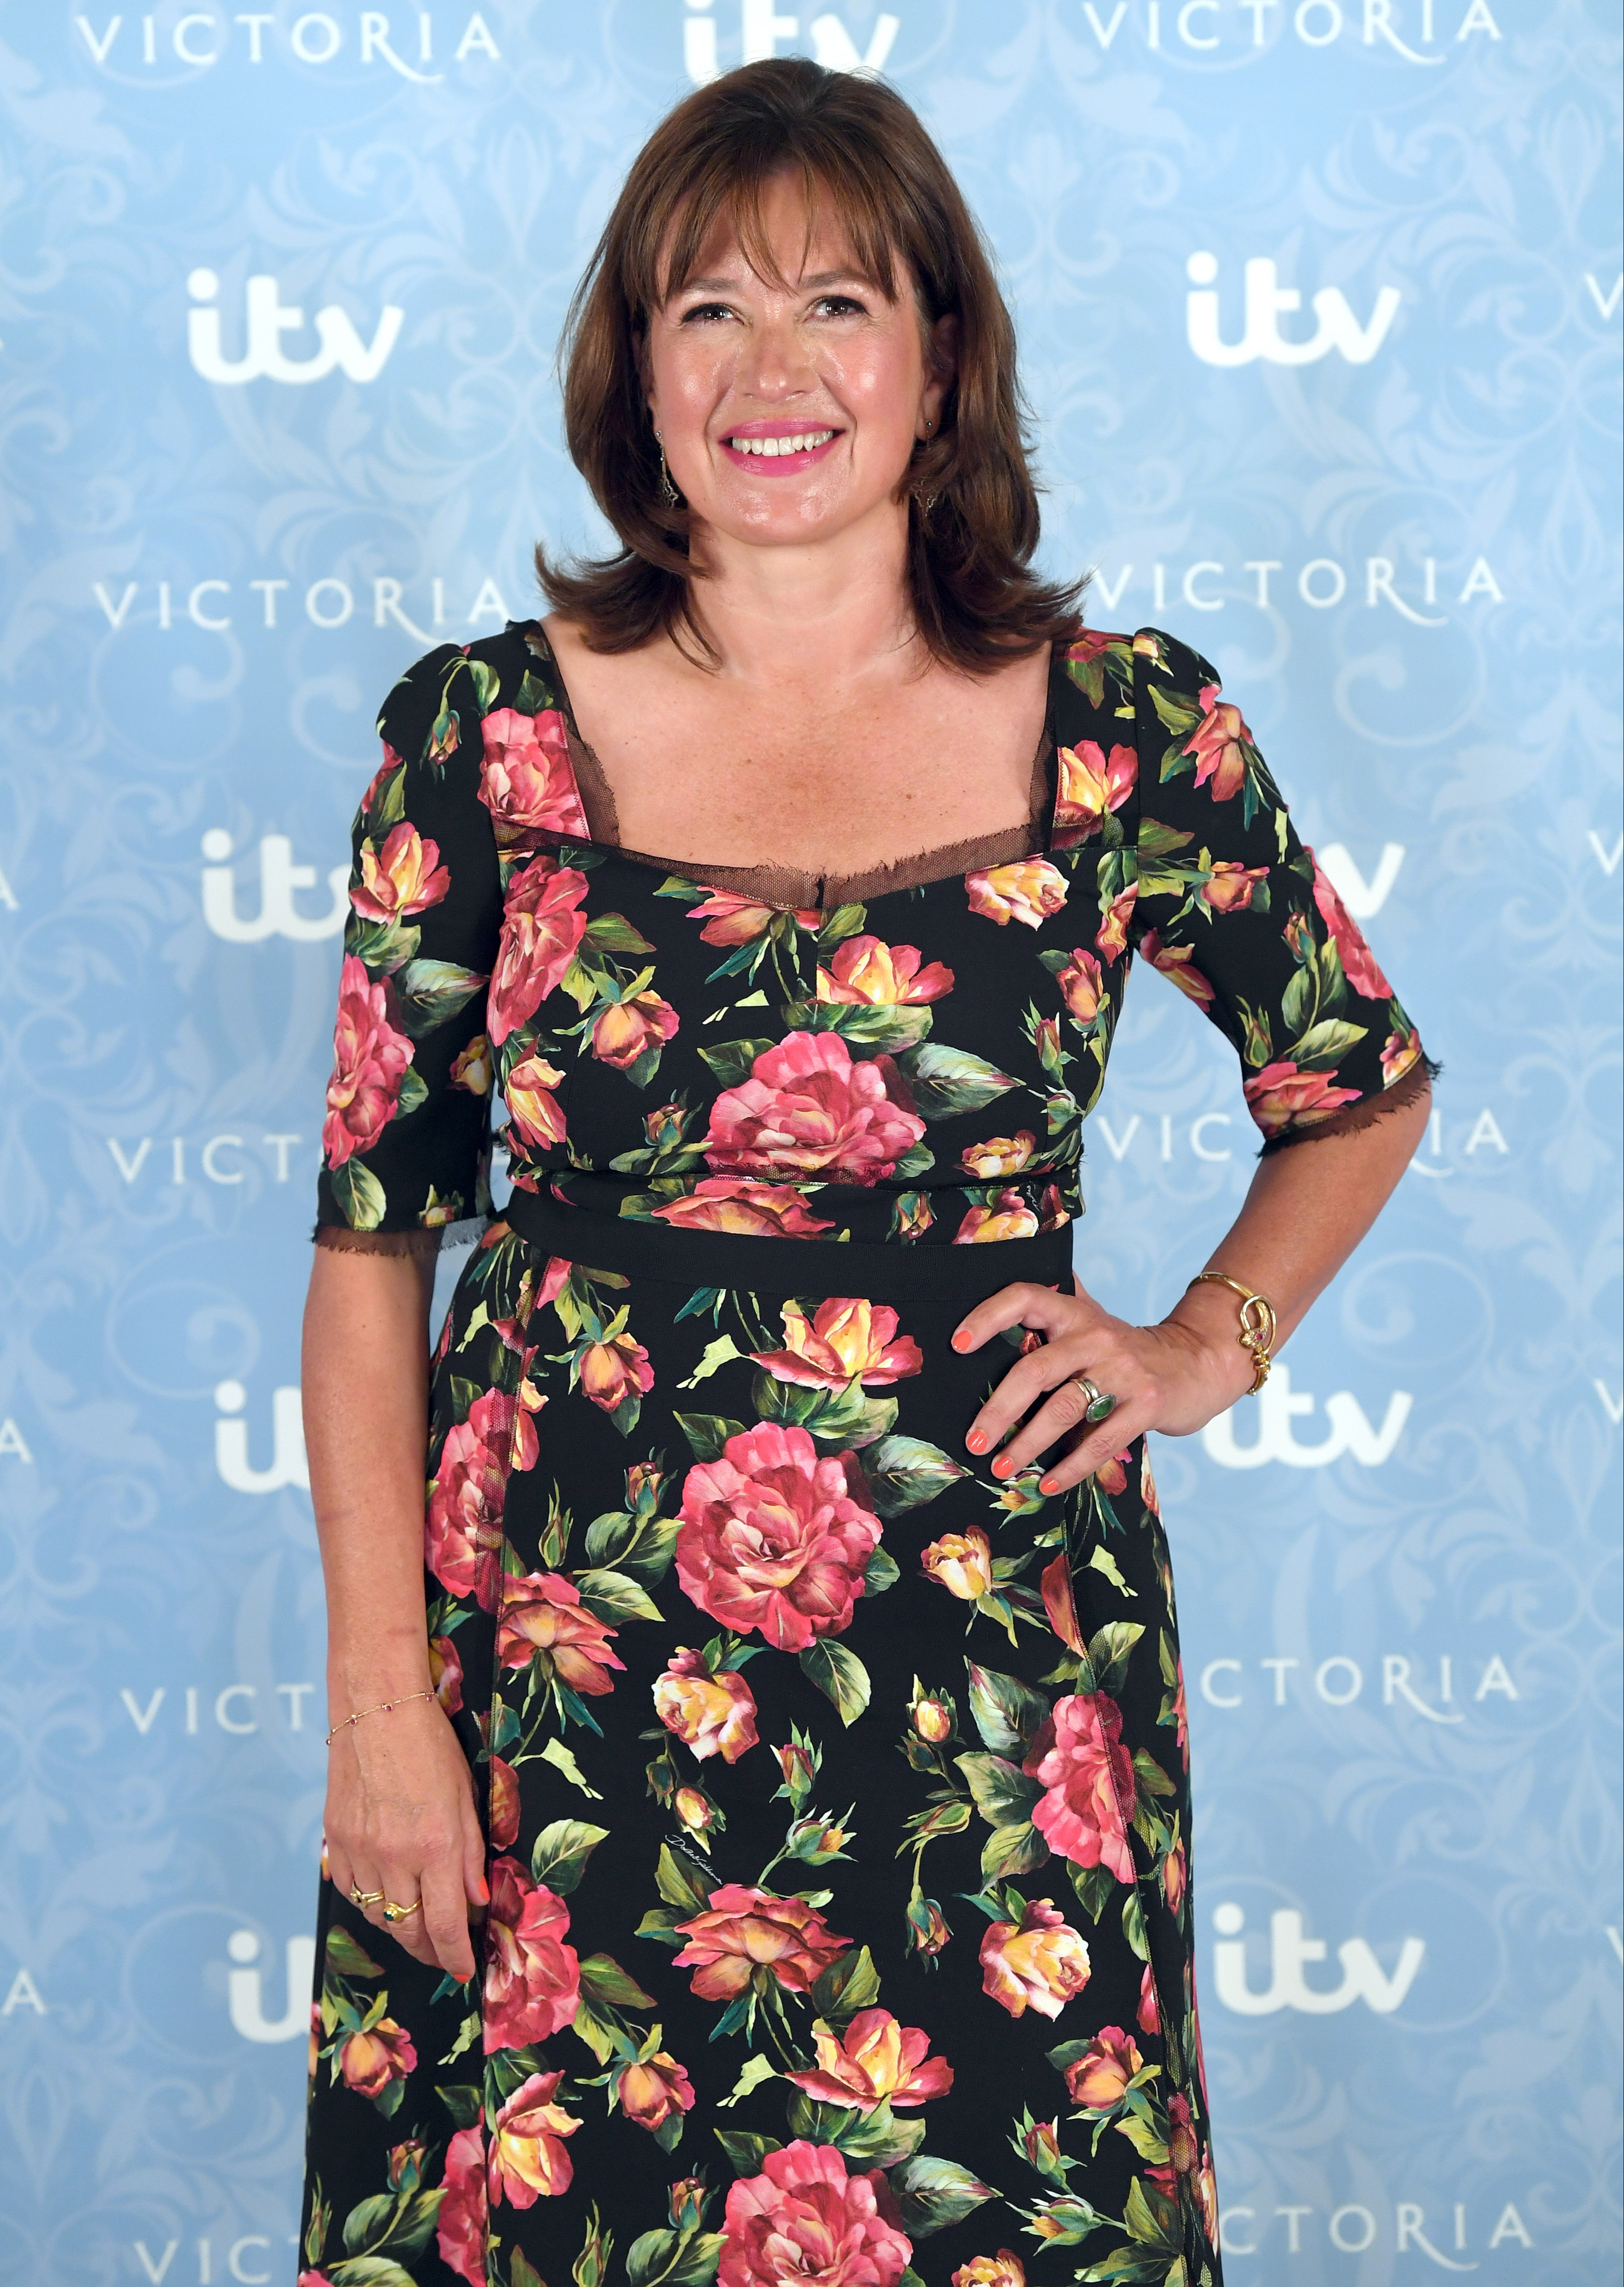 Die Schöpferin des ITV-Hits „Victoria“, Daisy Goodwin, sagte, er habe 2013 ihre Brust berührt